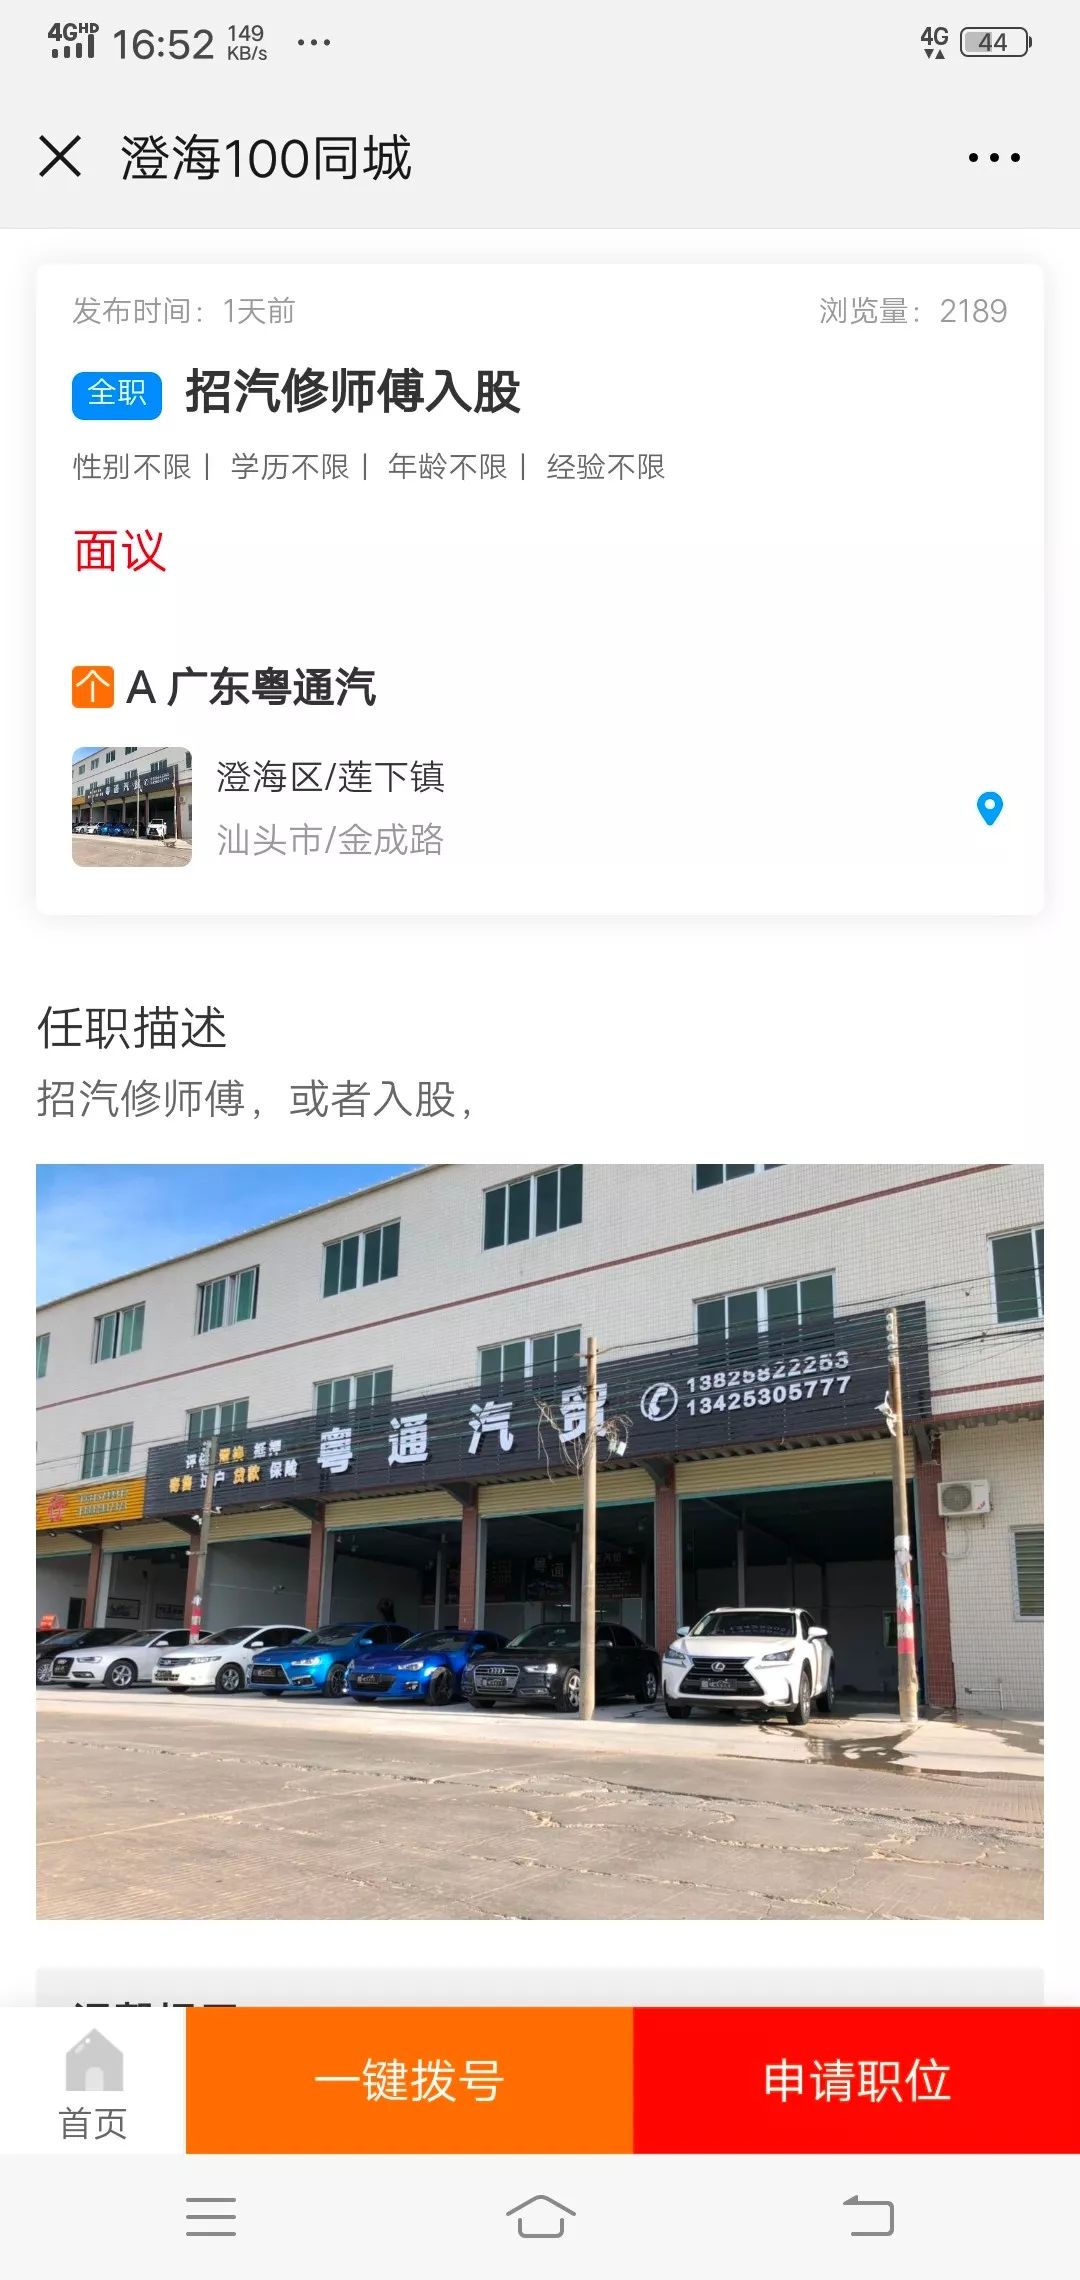 【同城】2月16日澄海招聘信息汇总,有土豪老板